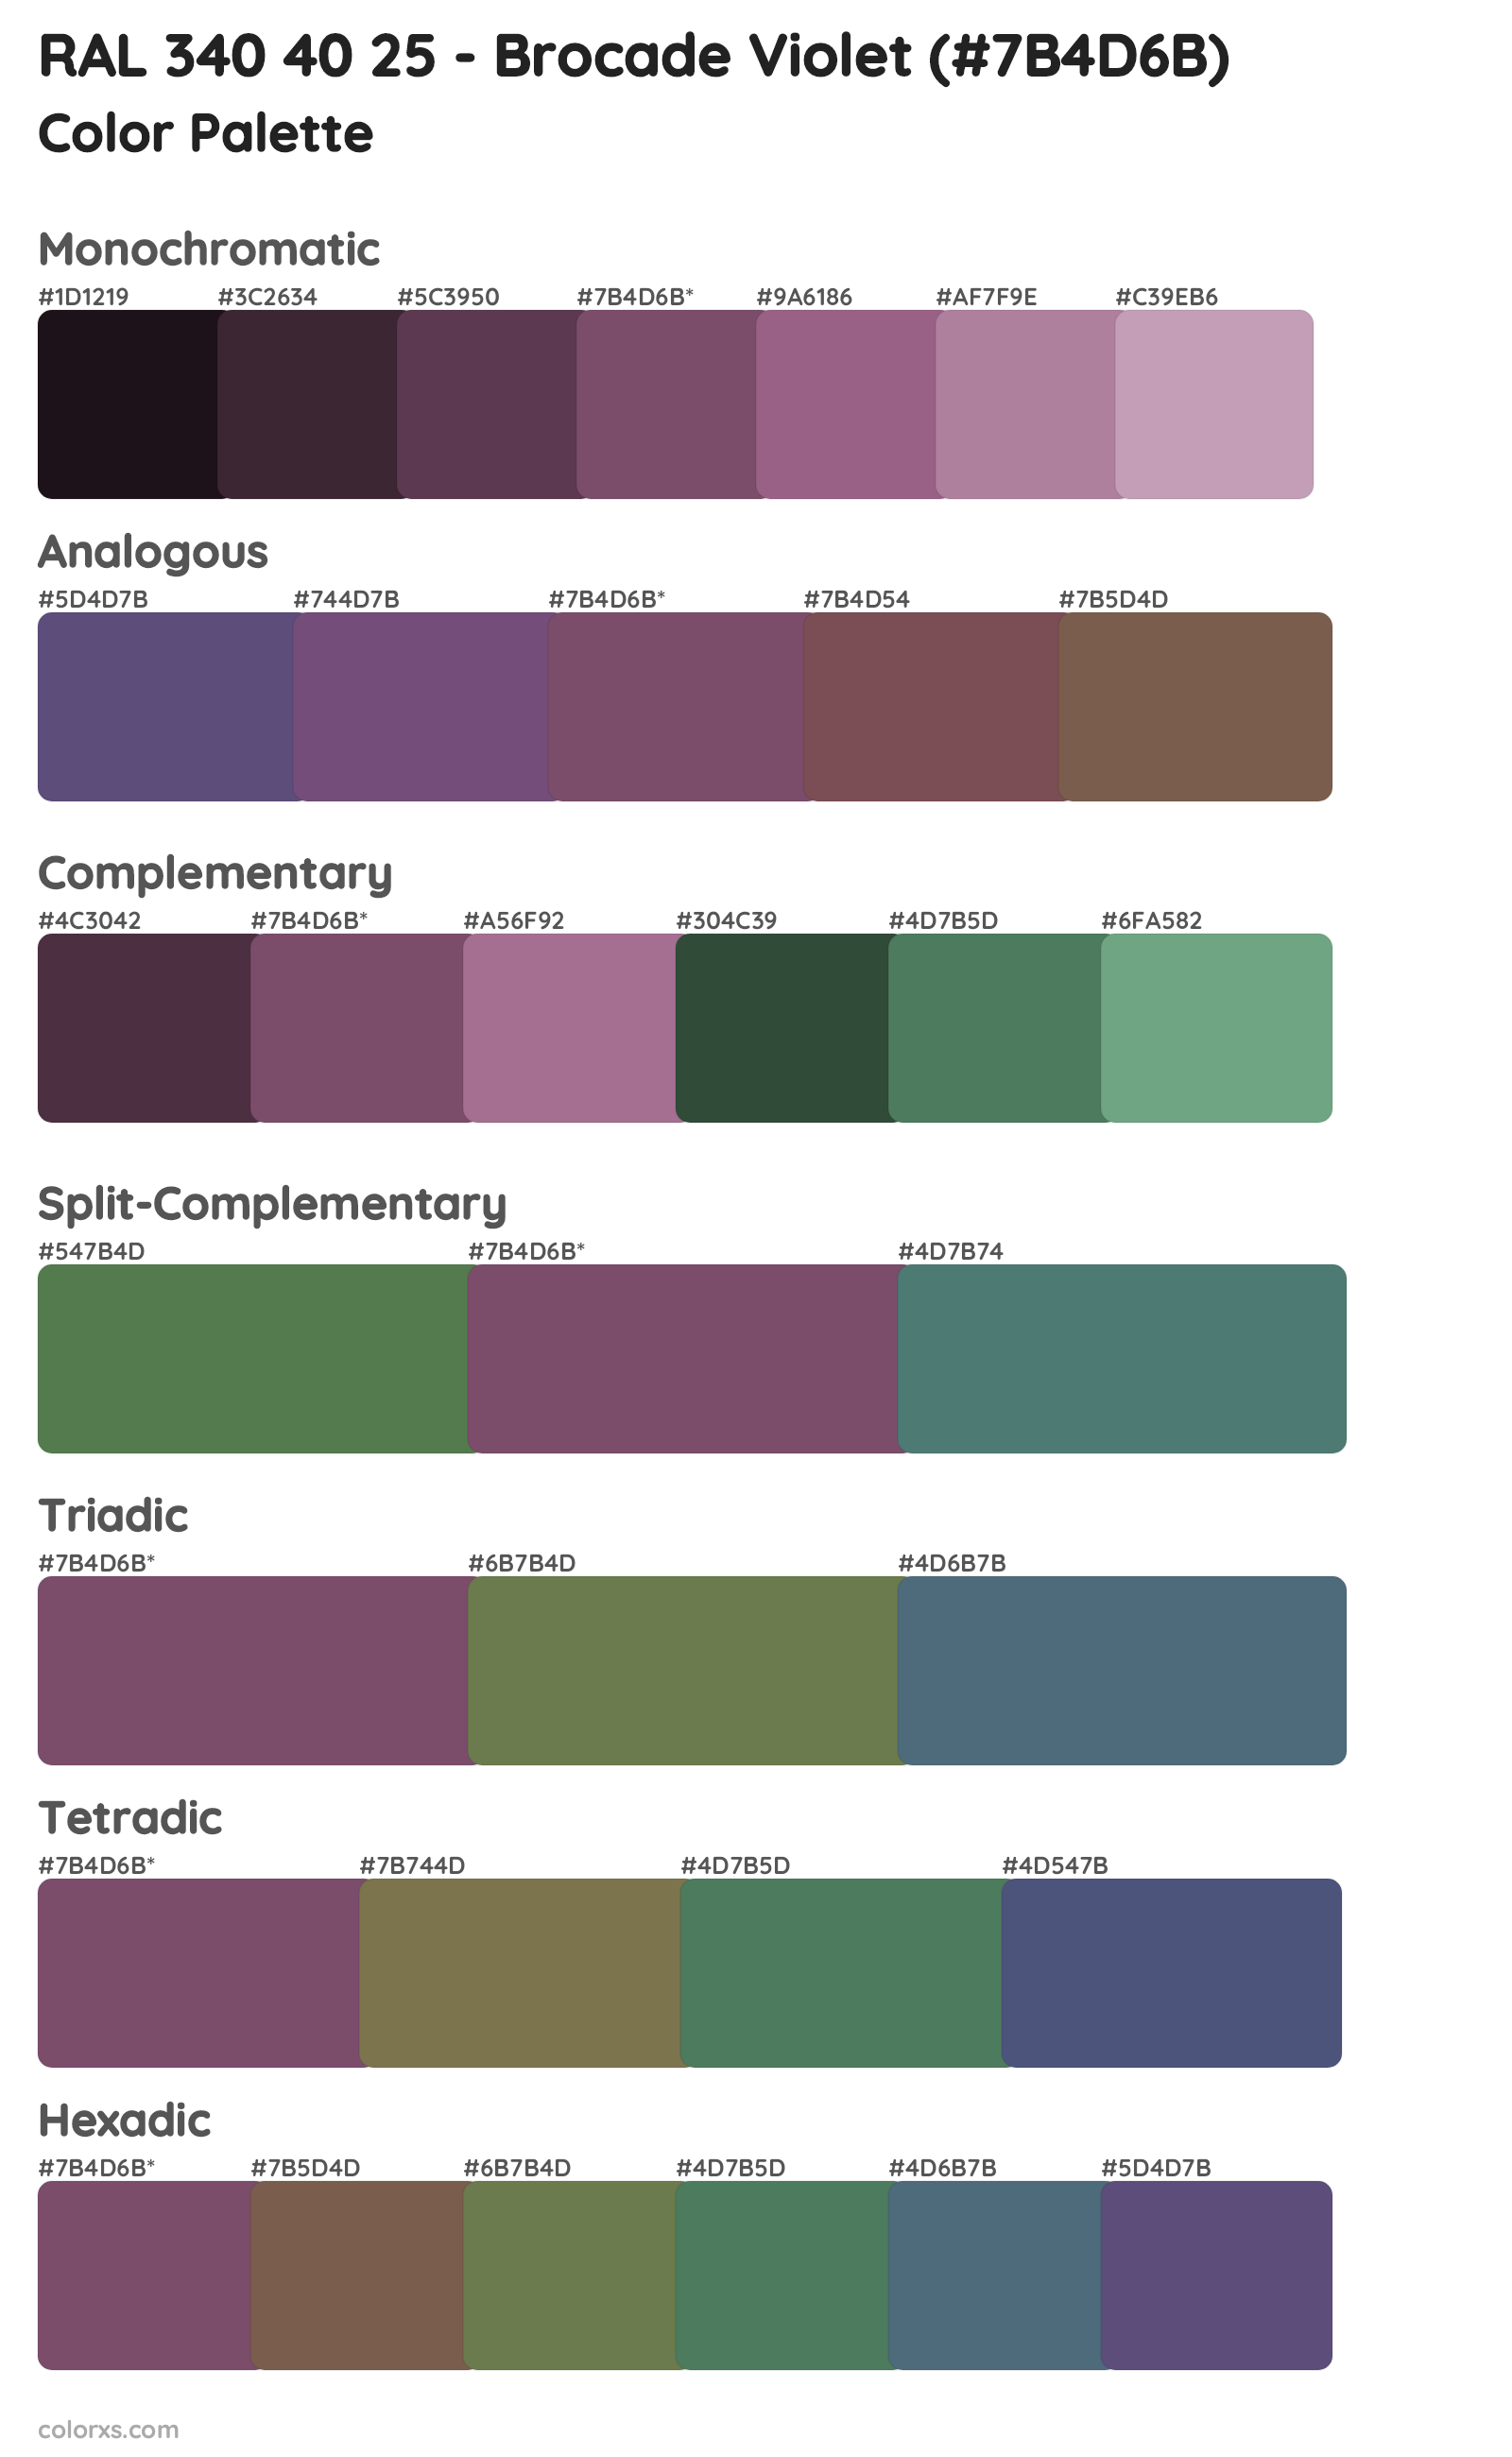 RAL 340 40 25 - Brocade Violet Color Scheme Palettes